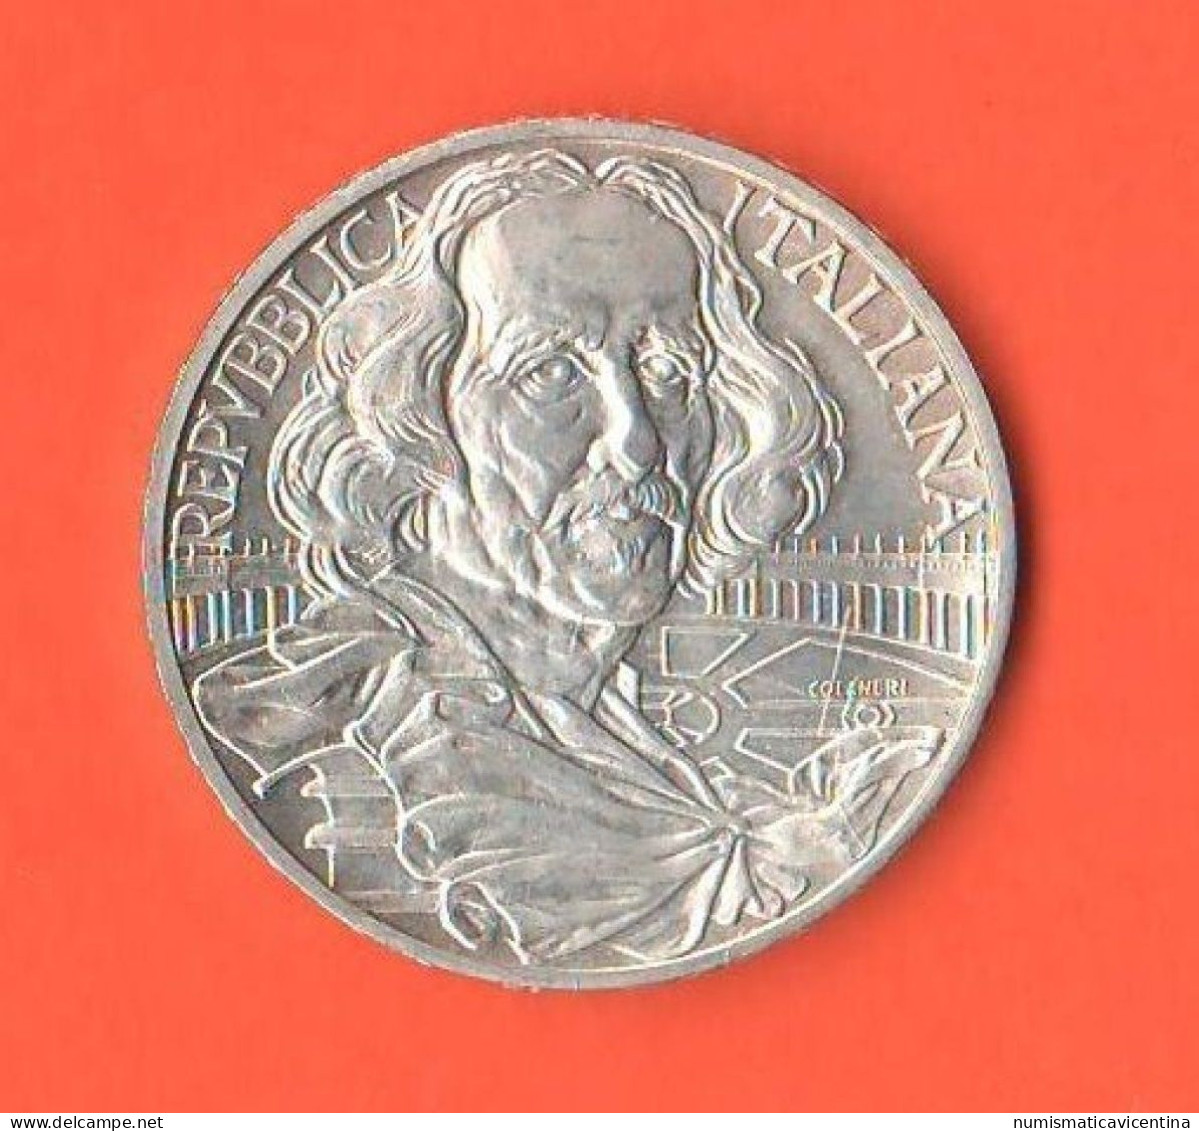 Italia 1000 Lire 1998 Bernini Italy Italie Silver Commemorative Coin - Conmemorativas